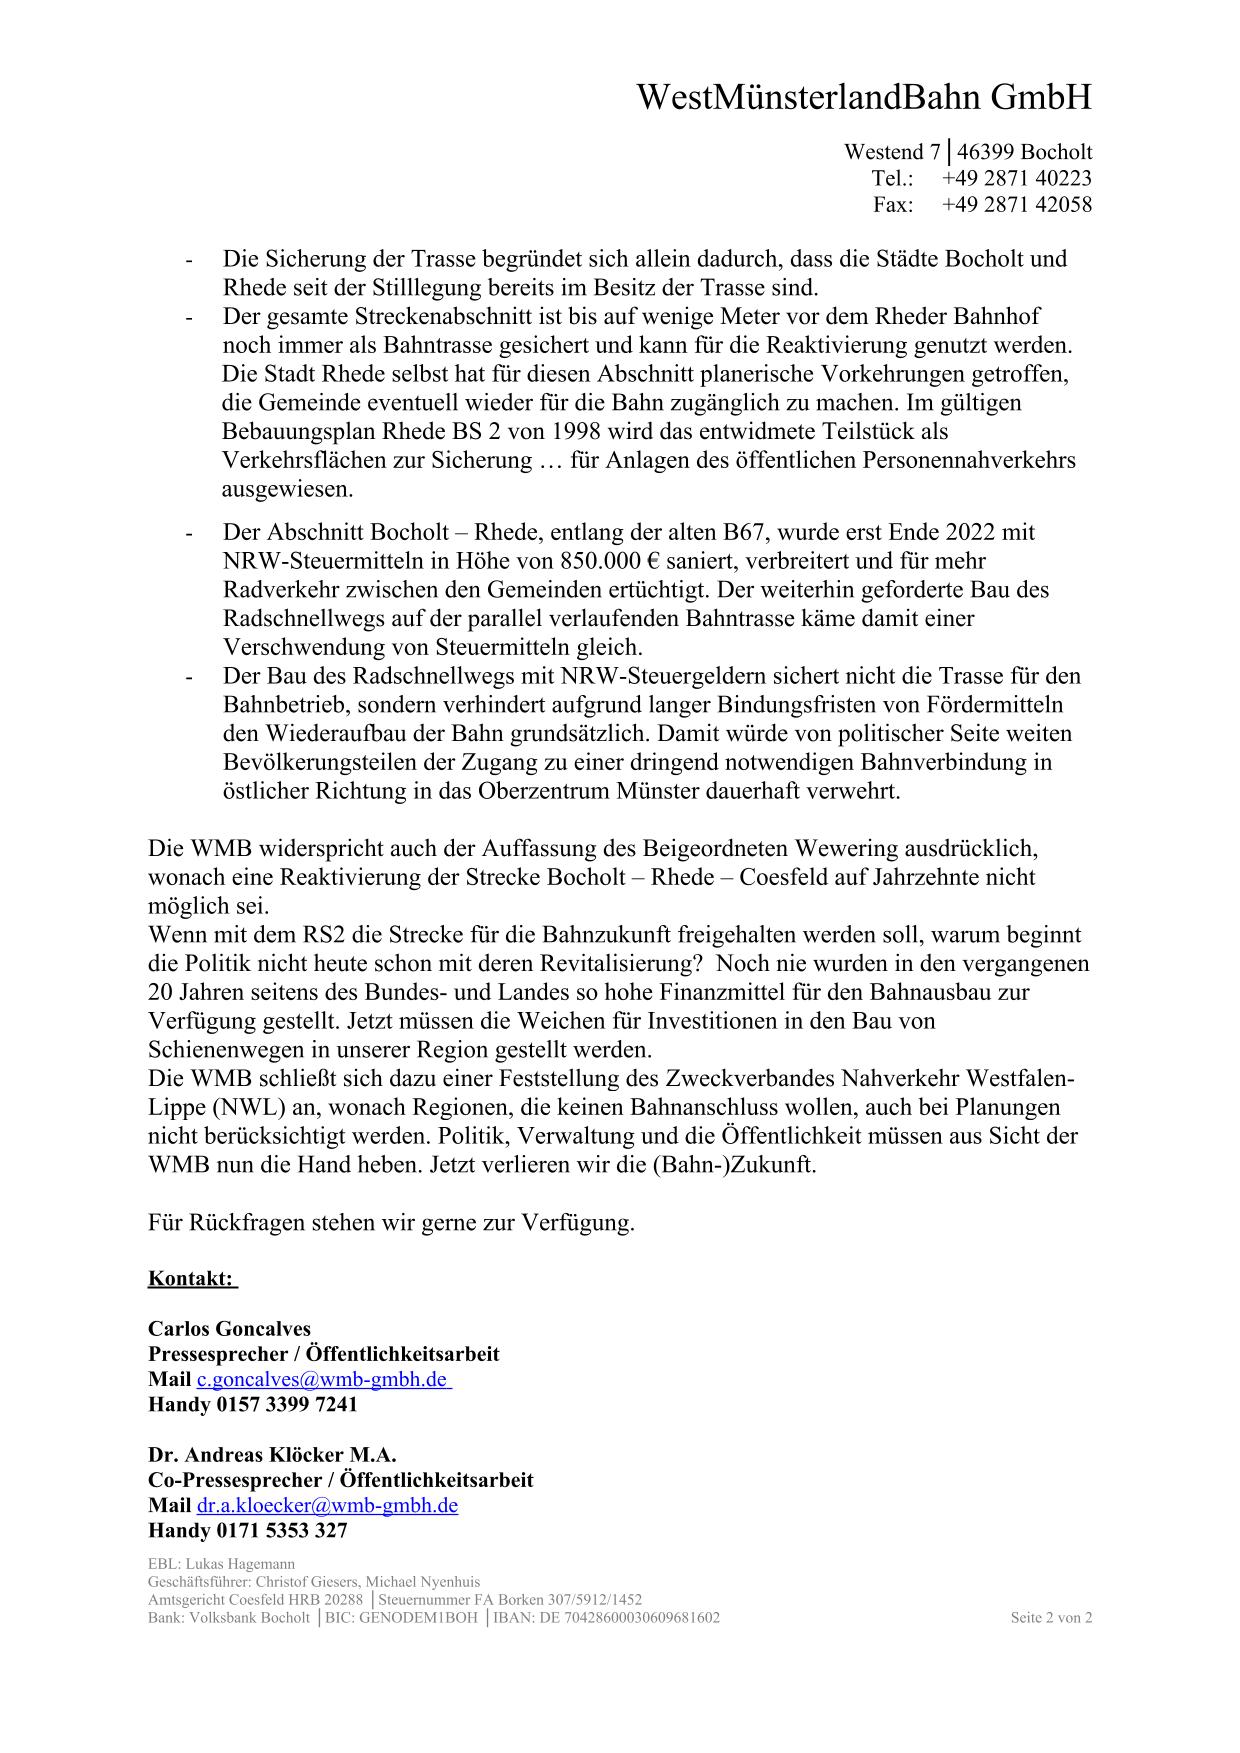 WMB-Pressemitteilung zu den Entwürfen des neuen Regionalplans Münsterland / Seite 2